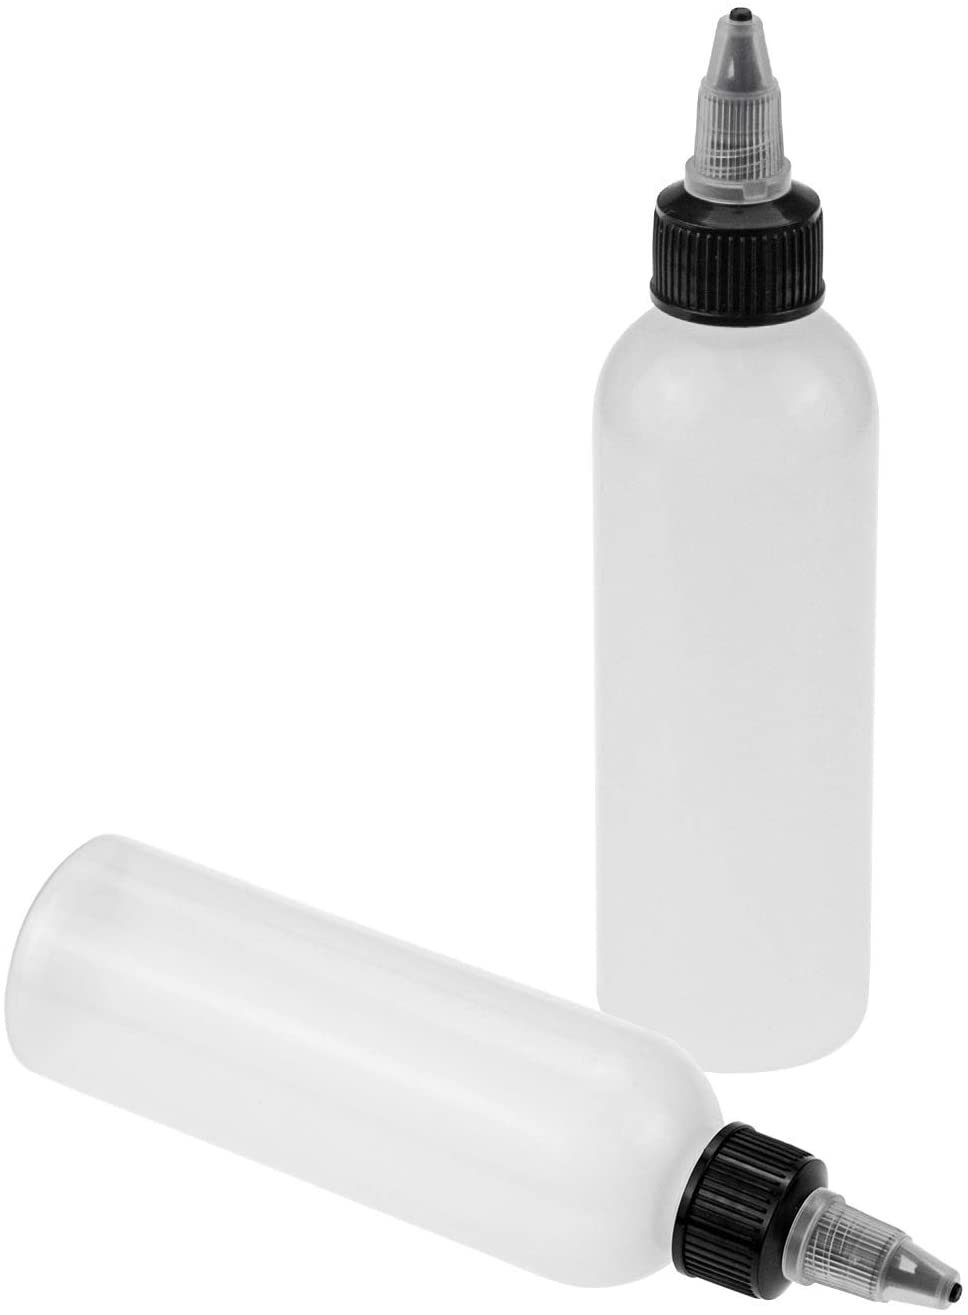 21890 Applicator Plastic filler bottle